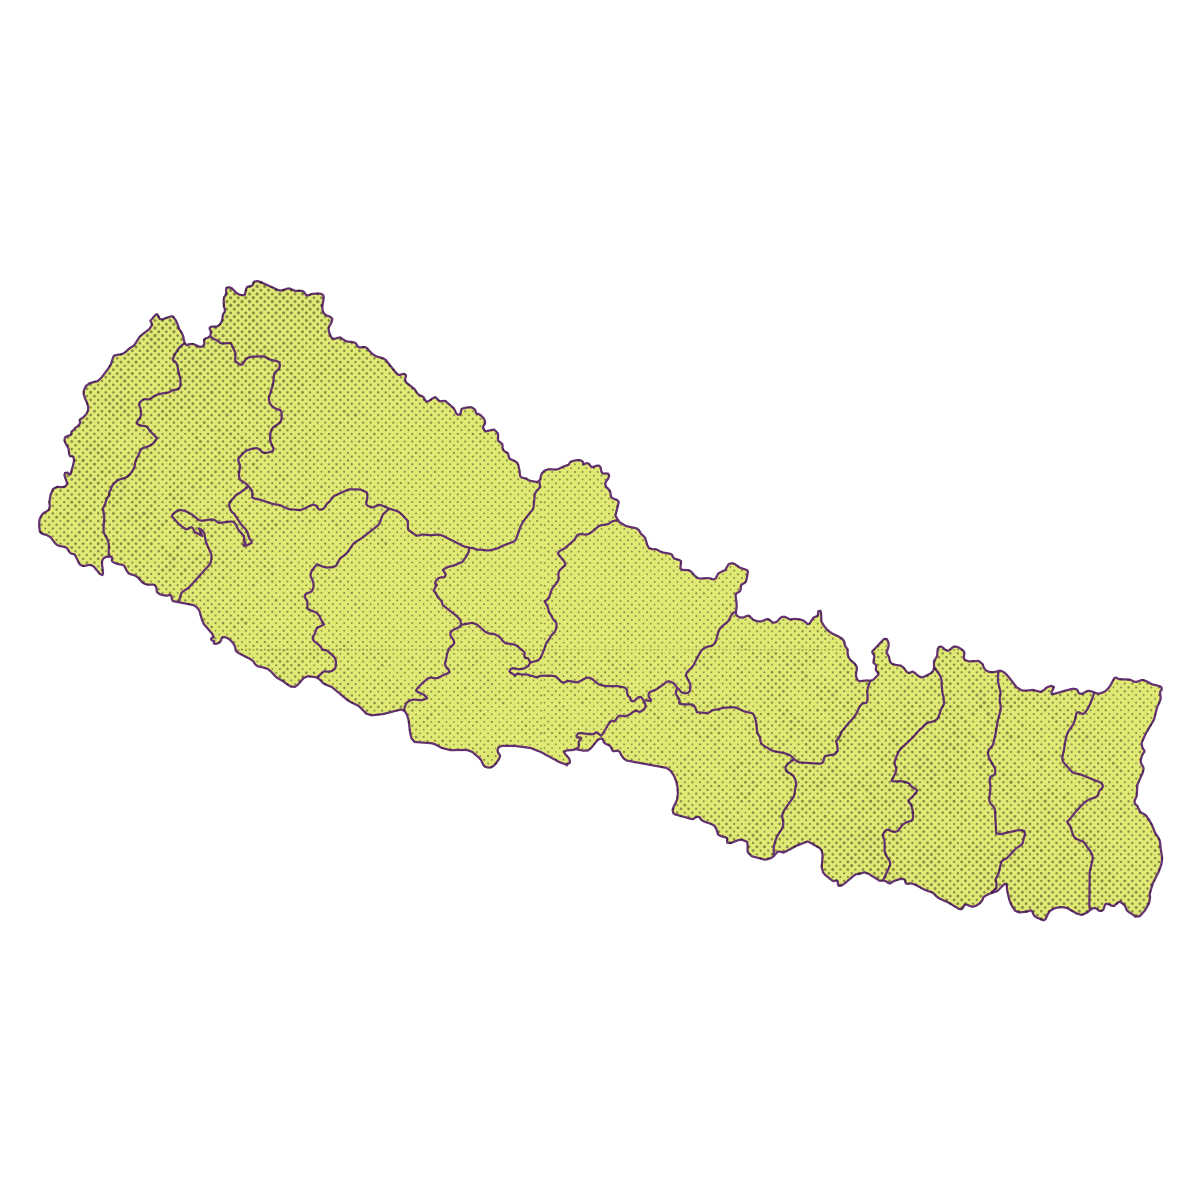 map nepal